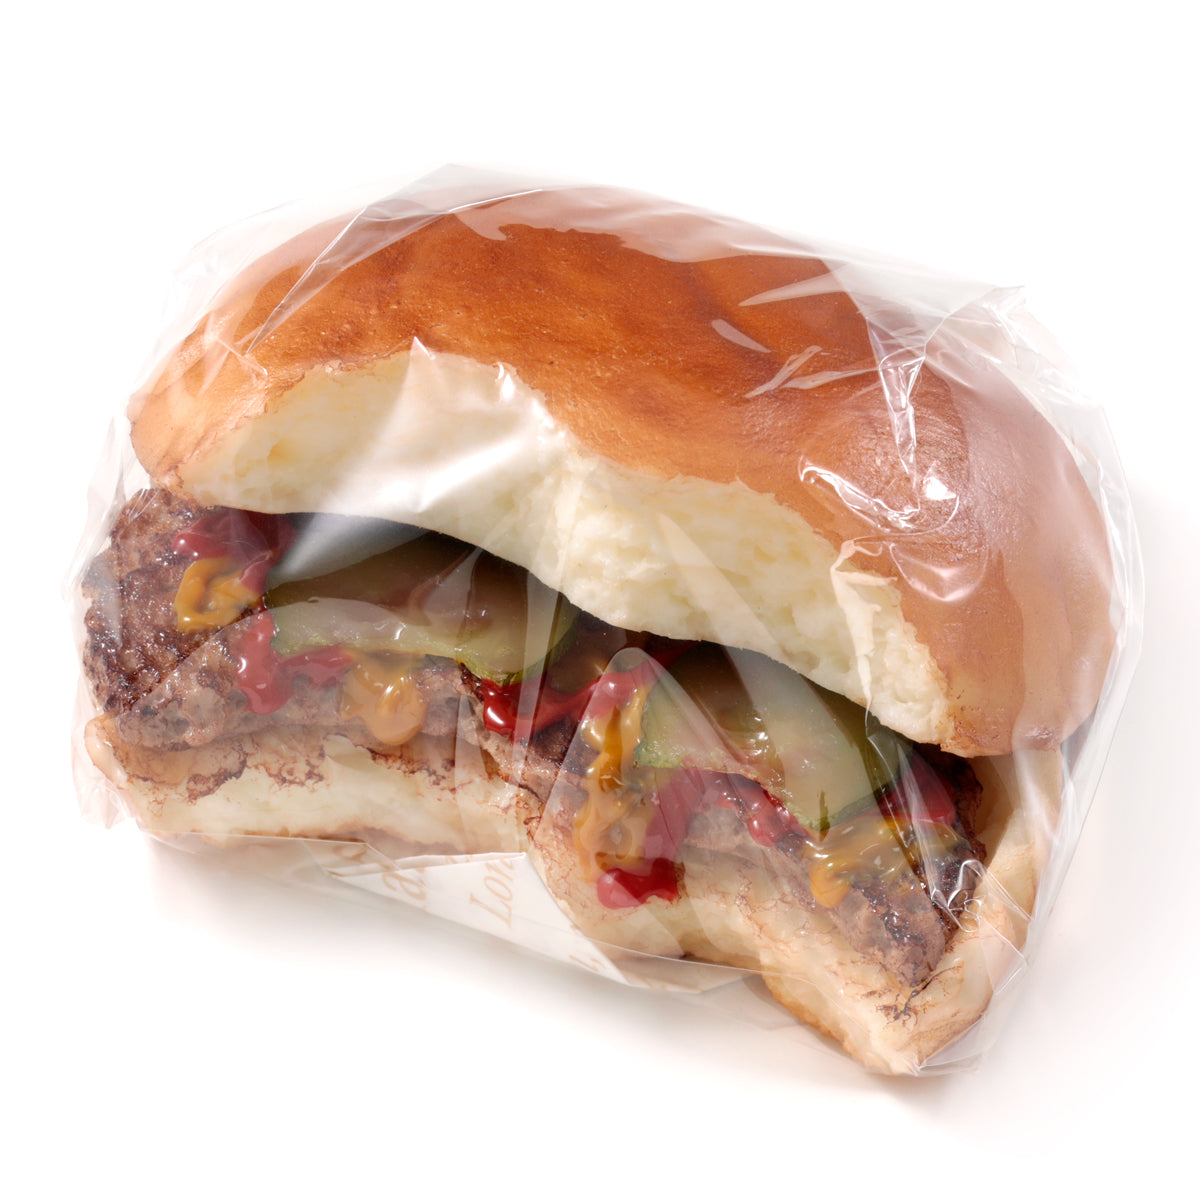 これは元祖食品サンプル屋の「ハンバーガー」の商品パッケージ画像です。